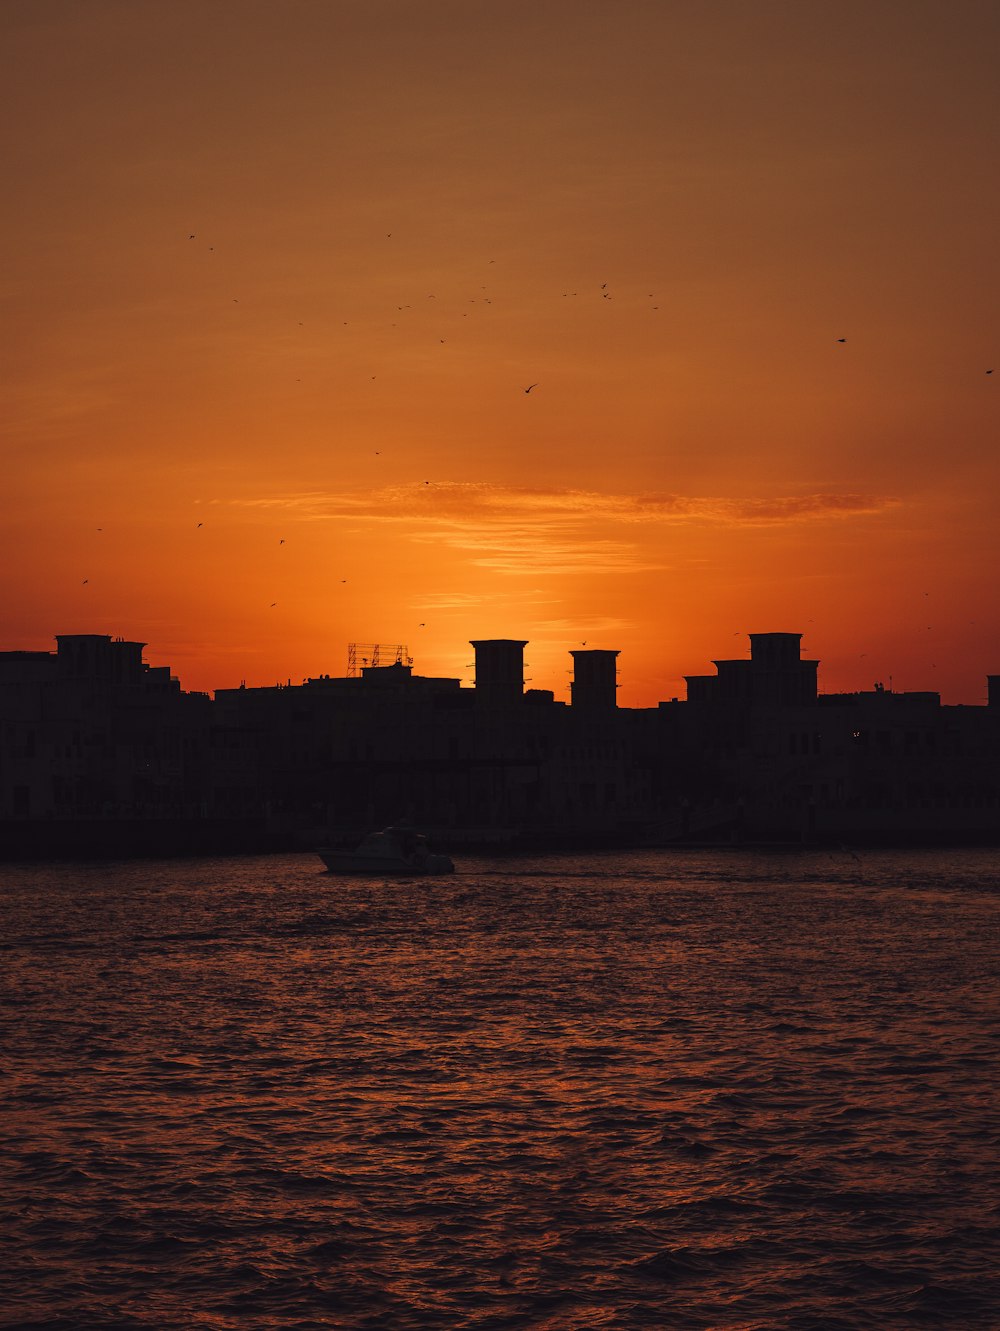 Il sole sta tramontando su una città sull'acqua